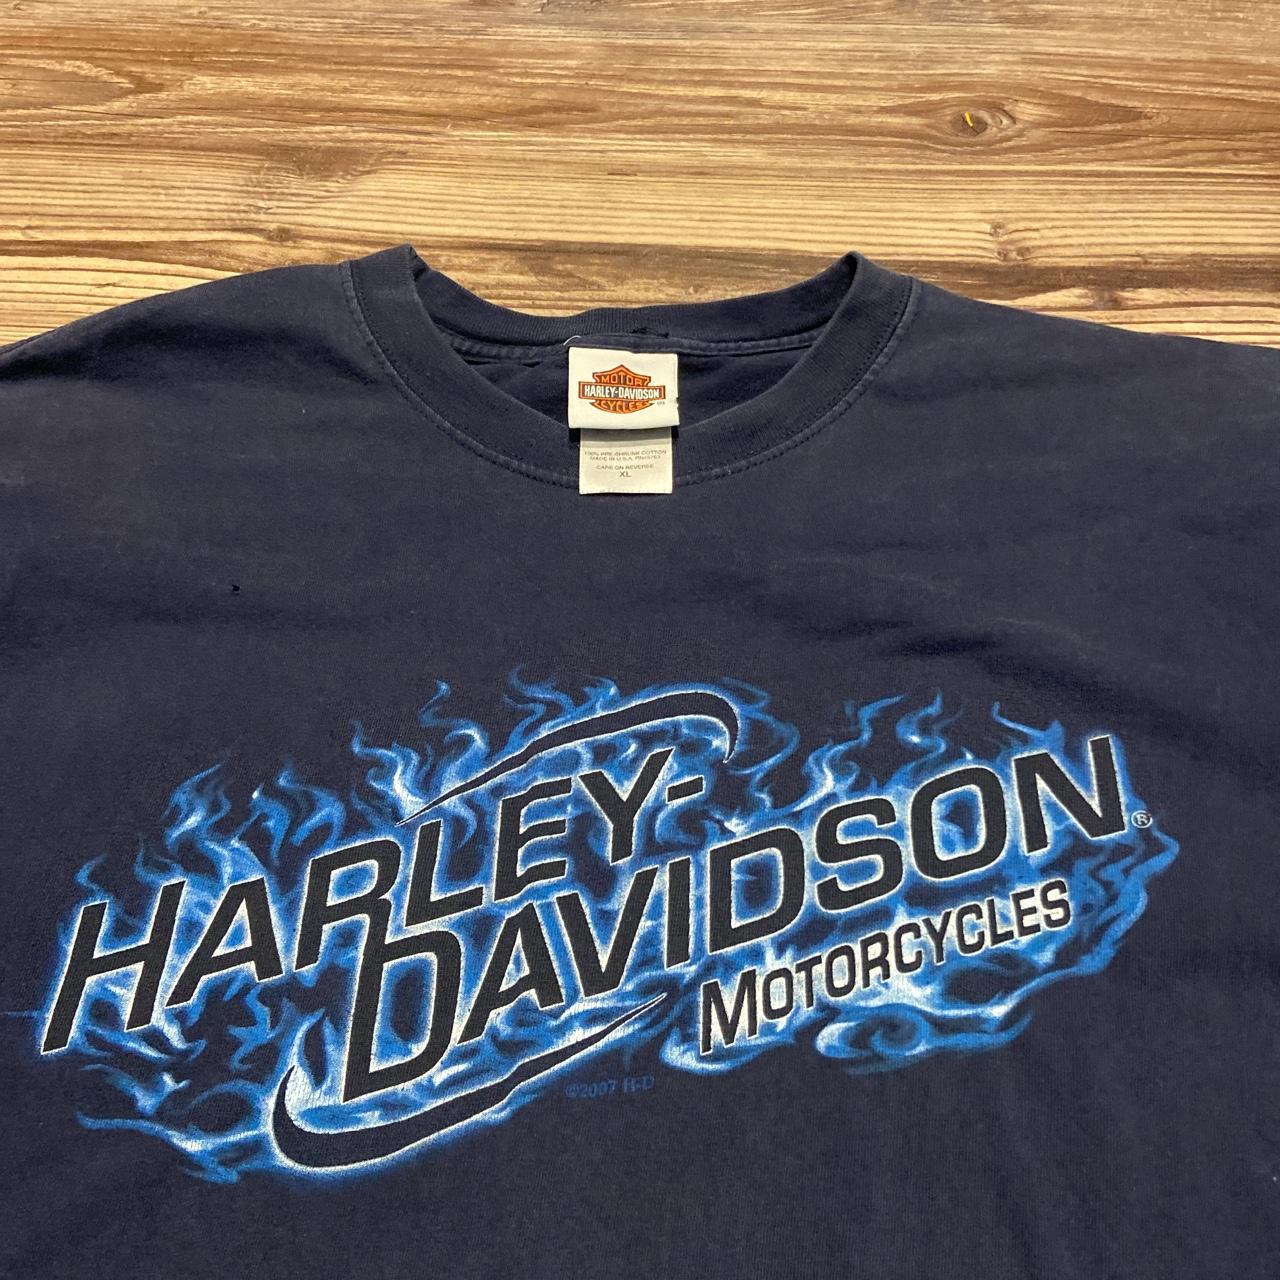 Vintage Harley Davidson Motorcycle Tee - Depop